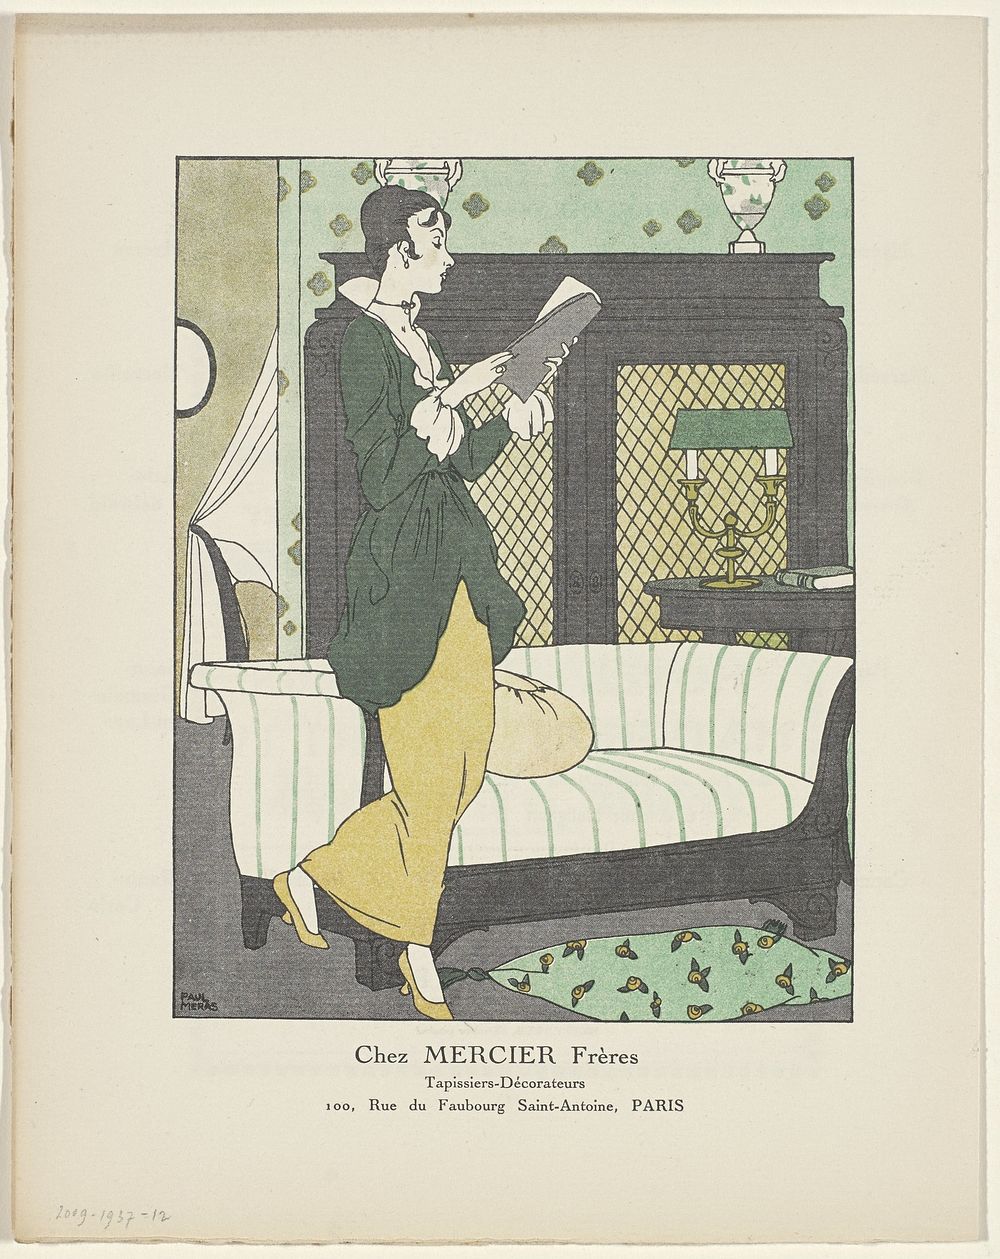 Gazette du Bon Ton, 1914 - No. 4: Chez Mercier Frères, Tapissiers-Décorateurs (1914) by Paul Méras, anonymous, Lucien Vogel…